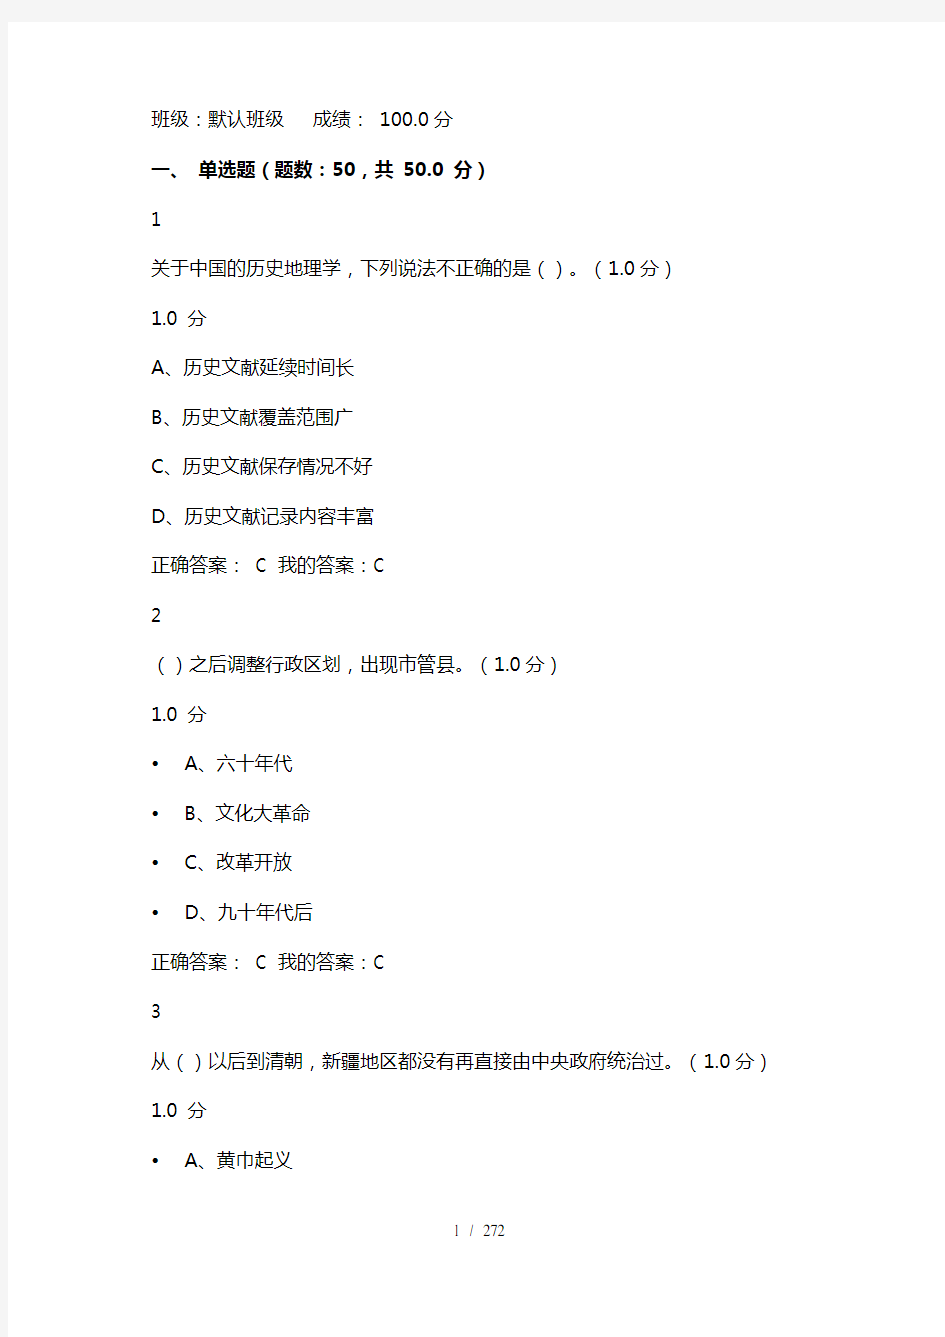 (最全)尔雅网课《中国历史人文地理(上)》章节测试及期末考试答案